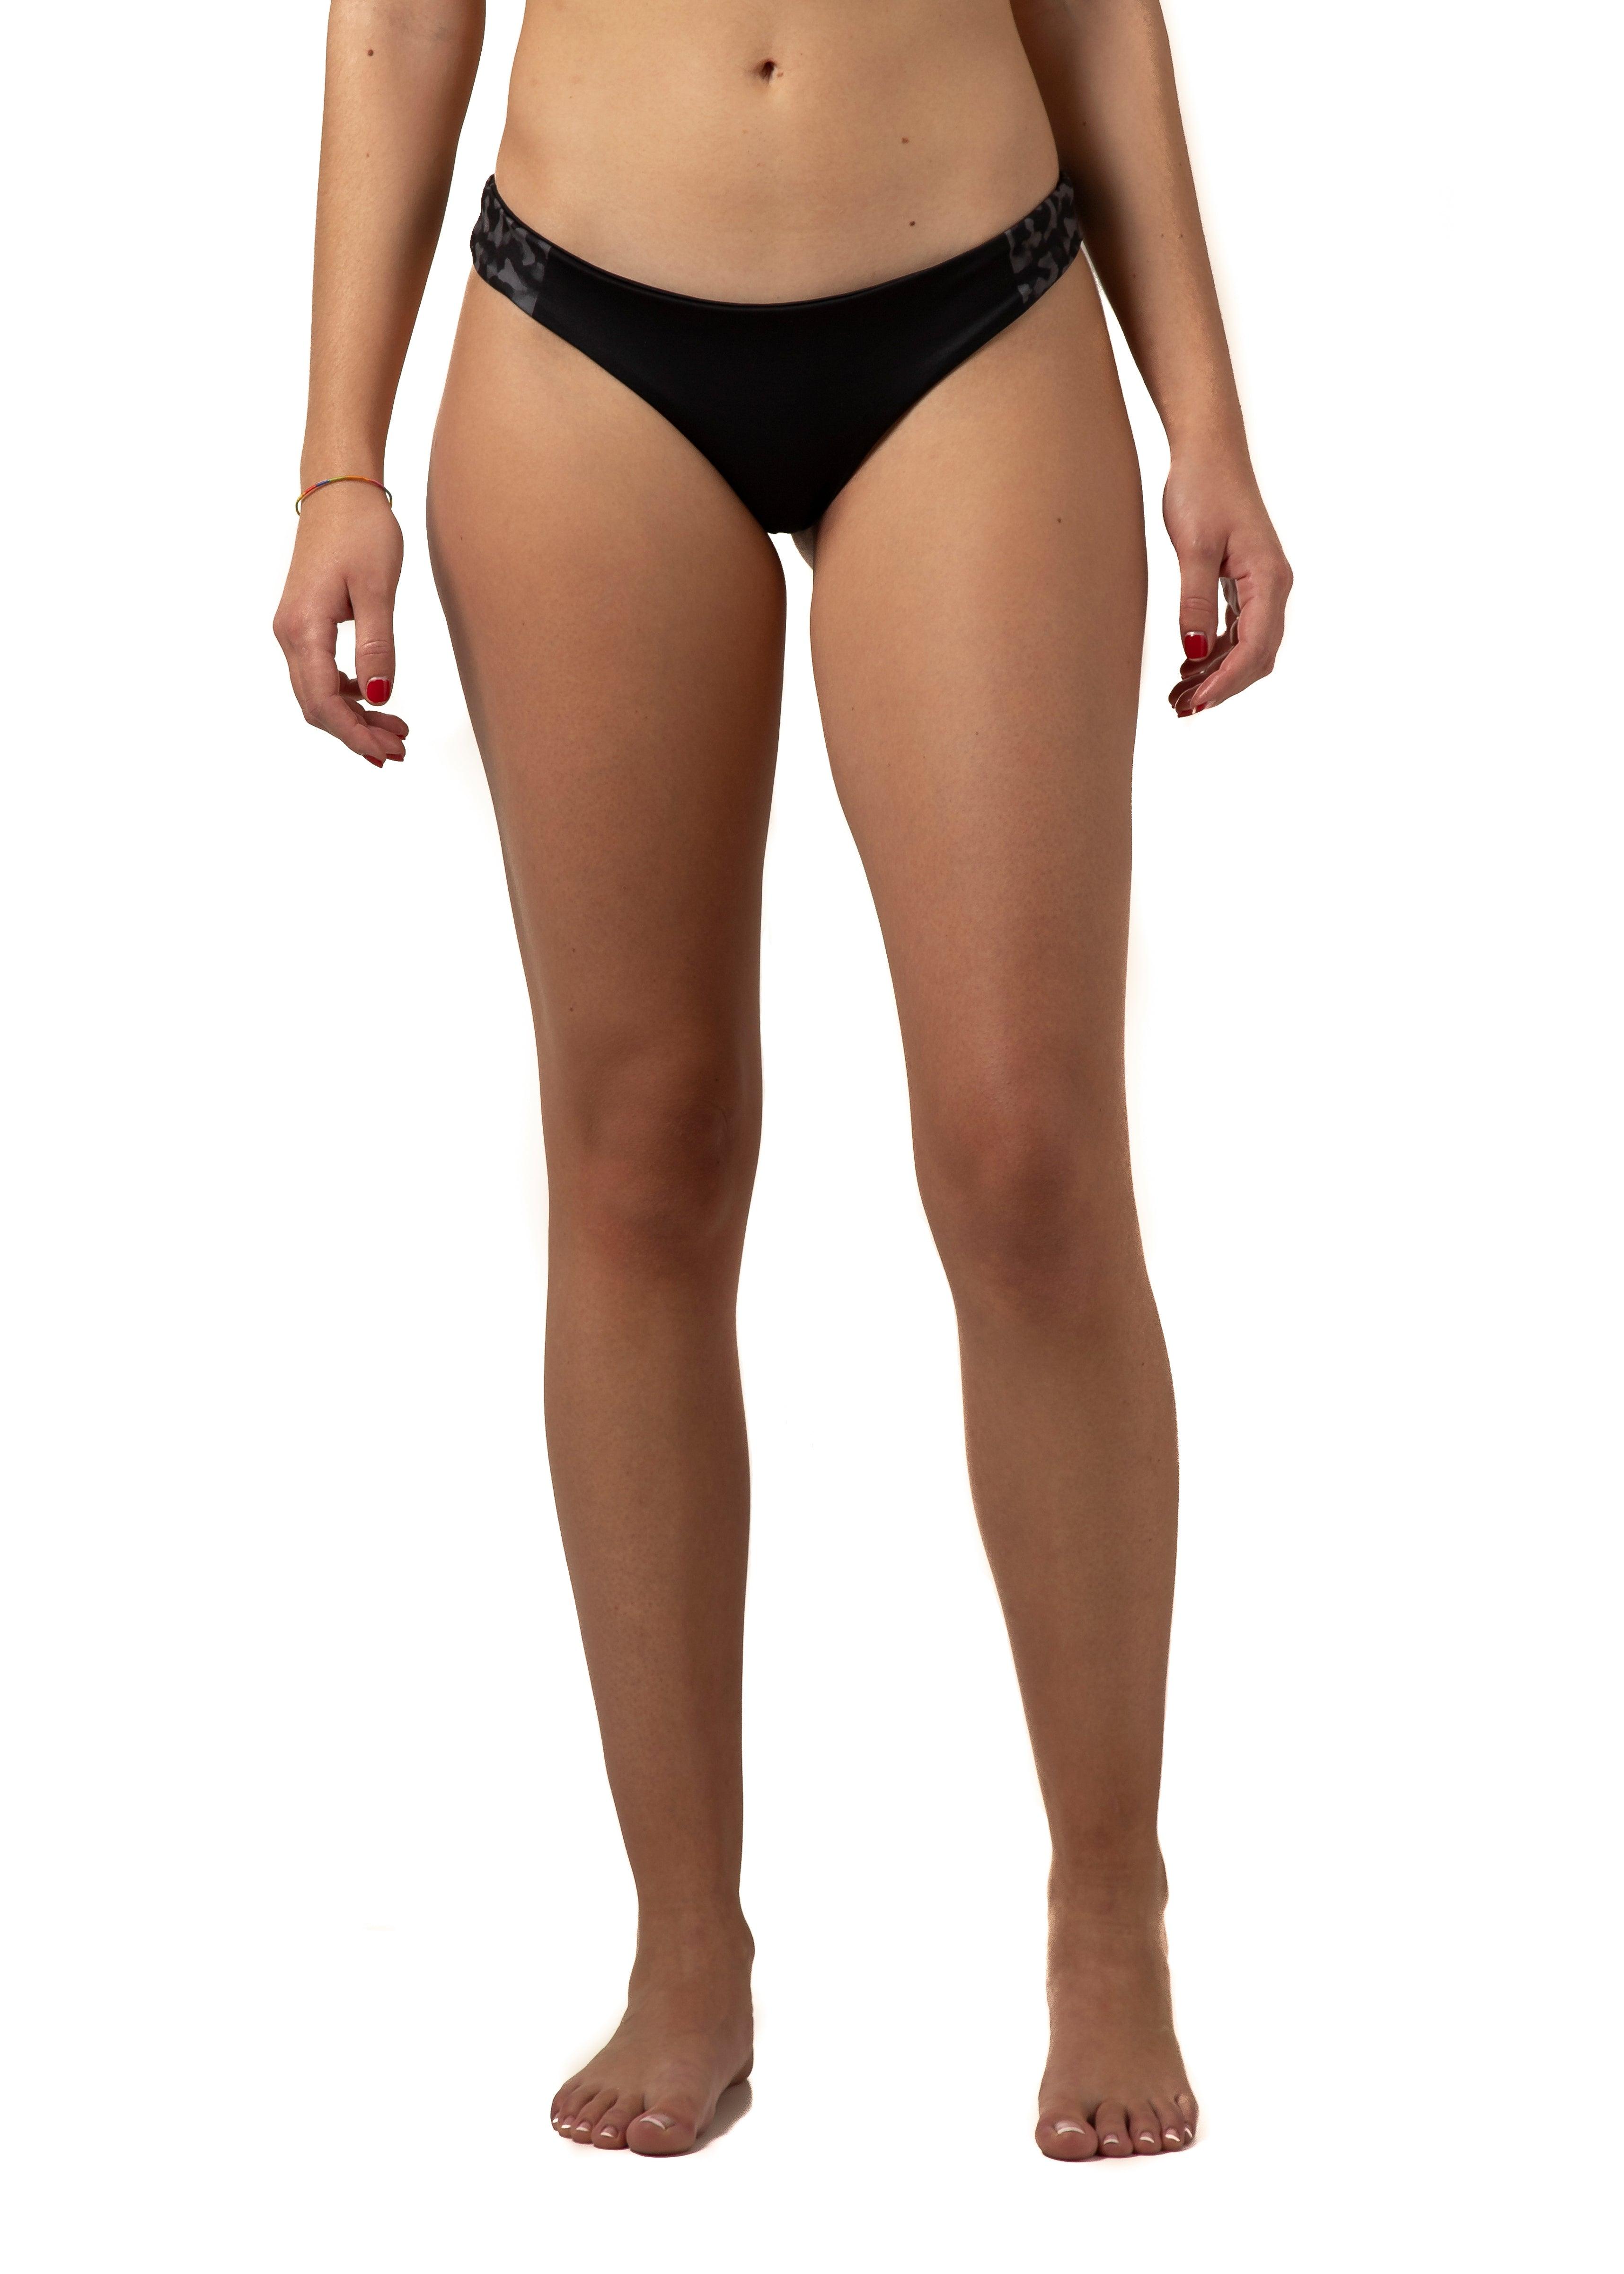 Braguita bikini pro volley - black camouflage - Volabola